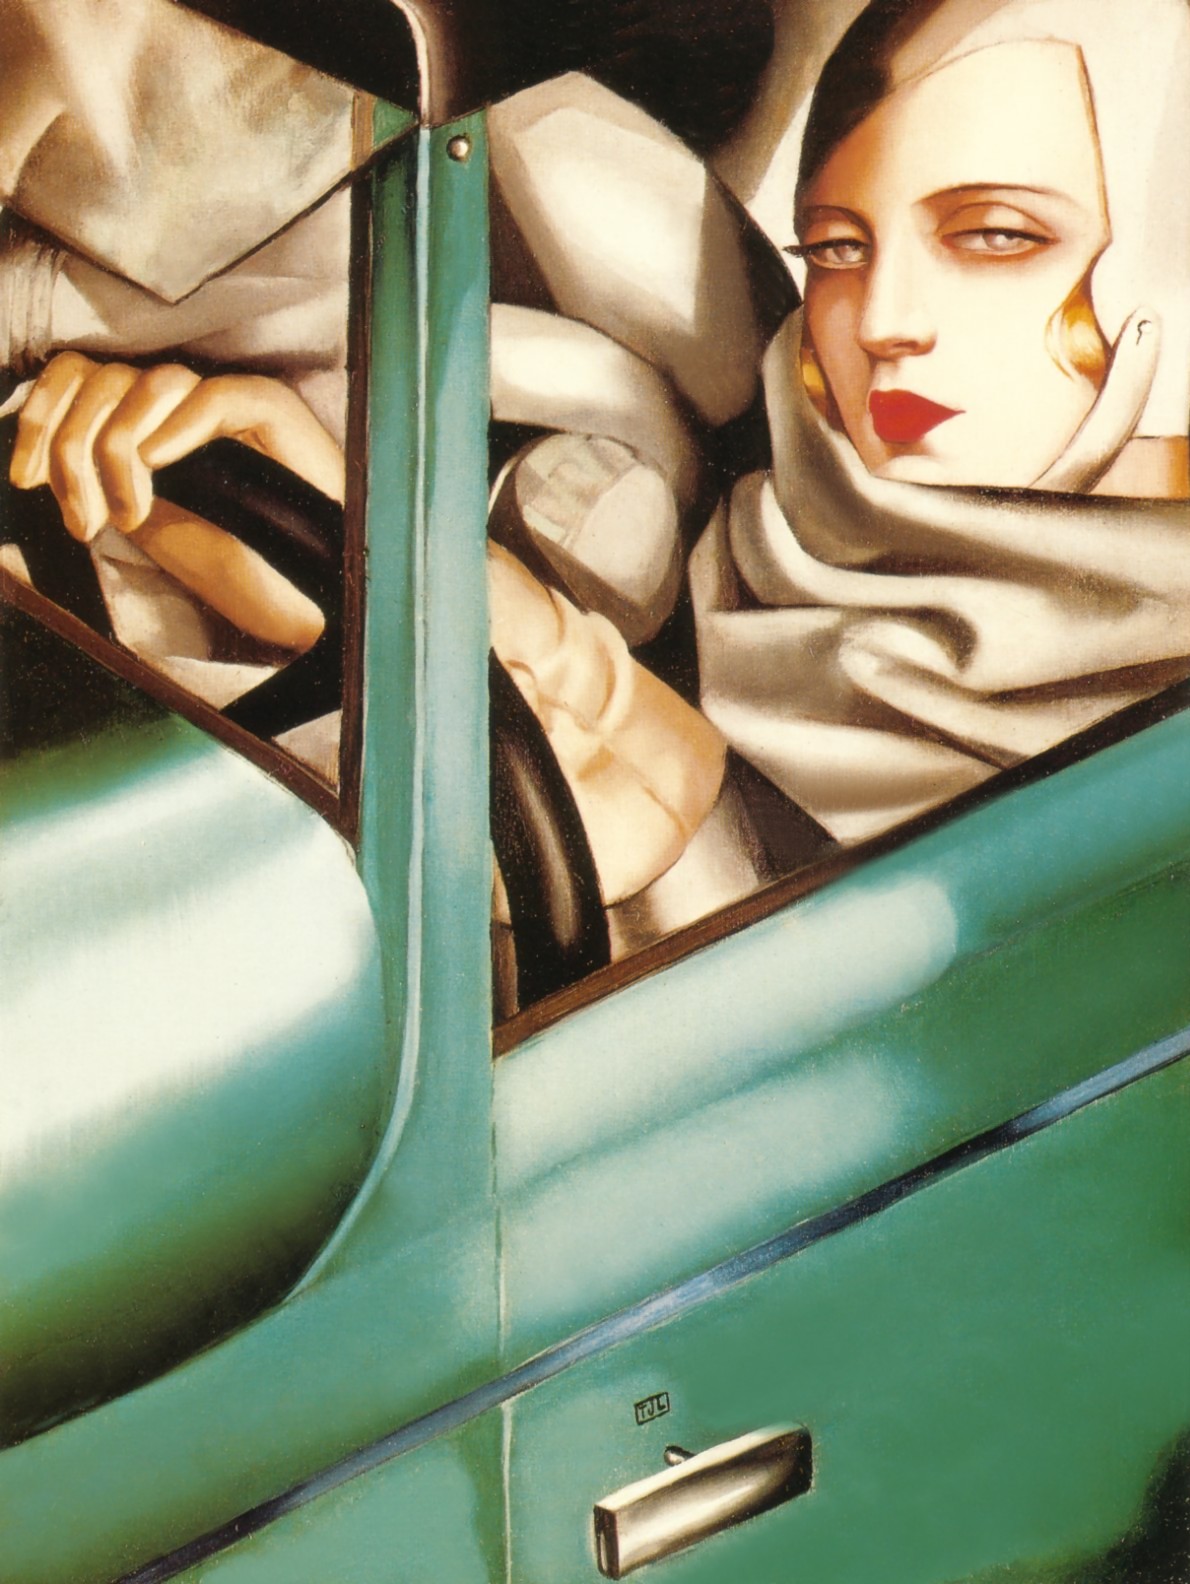 Autorretrato en el Bugatti Verde by Tamara de Lempicka - 1925
 Colección privada